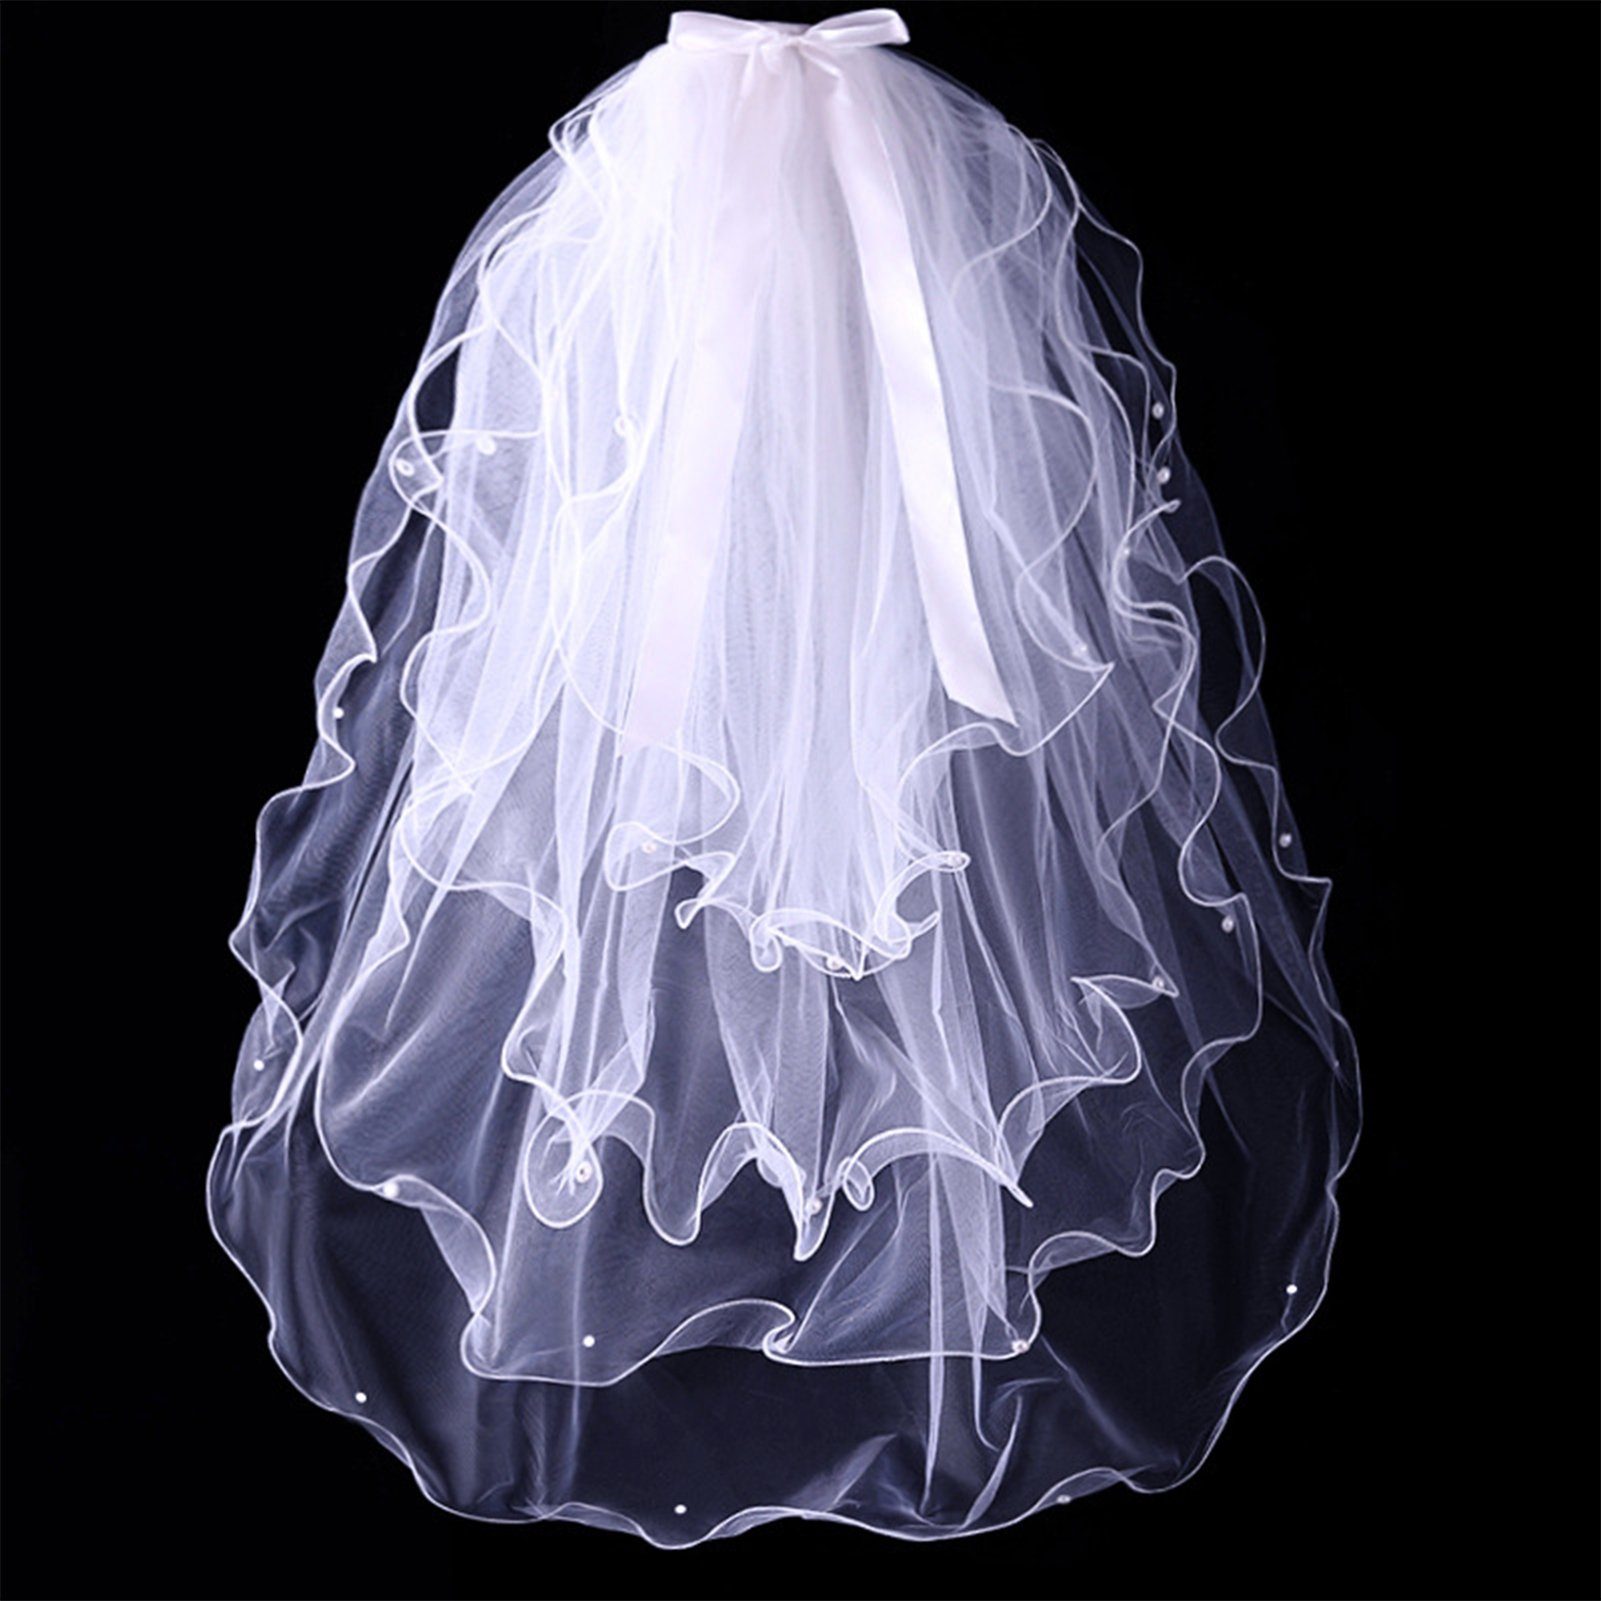 Für Perlen-Kurzschleier, Damen, B Blusmart Schleier Brautschleier Einfacher white Hochzeitsschleier 4-stufiger